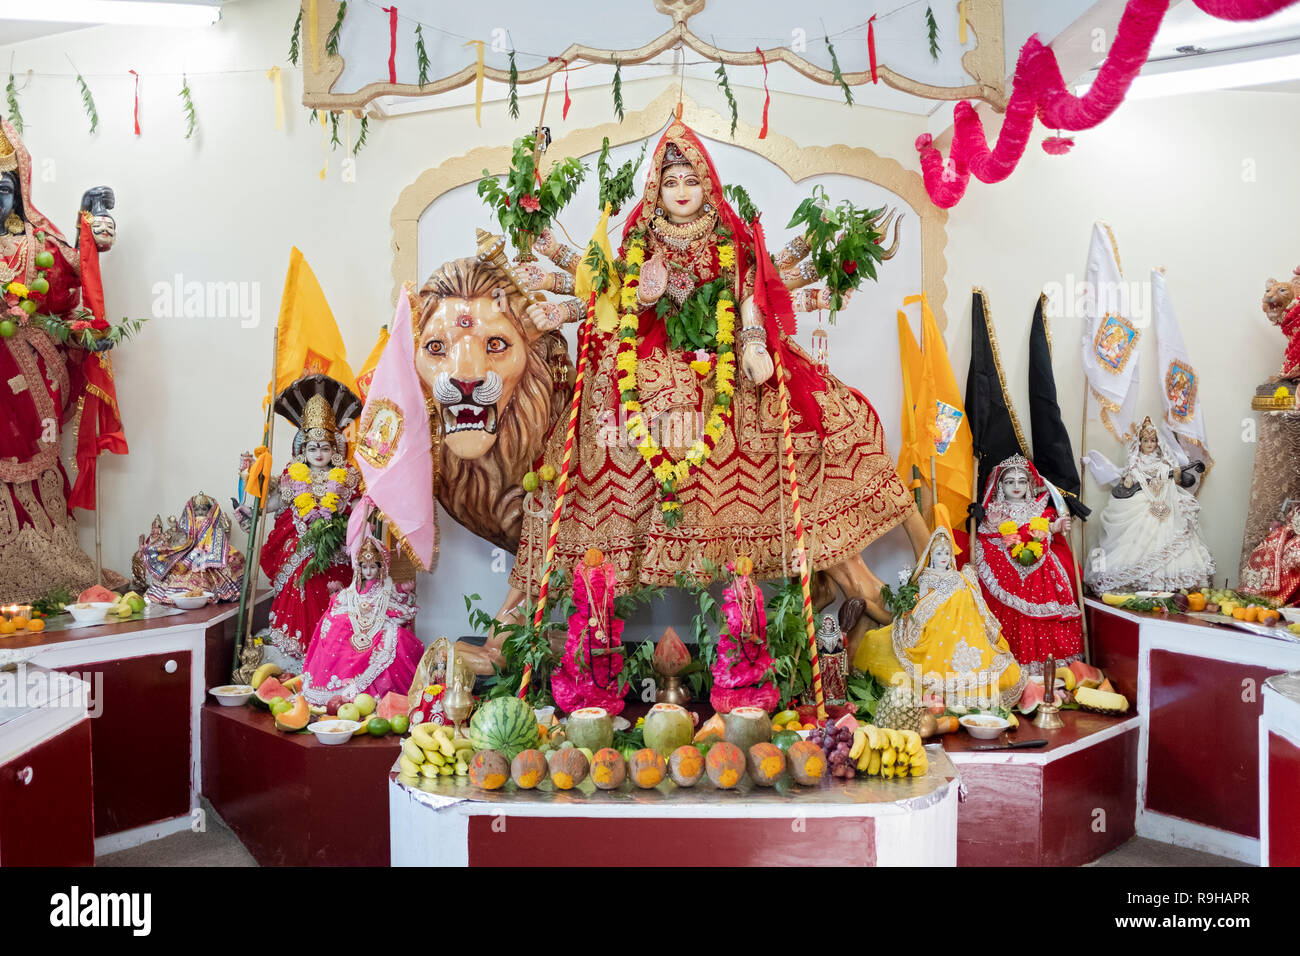 Der Altar auf der Amaa Om Sati Tempel in Jamaica, Queens New York verfügt über eine große eingerichtete Statue der Göttin Durga. Stockfoto